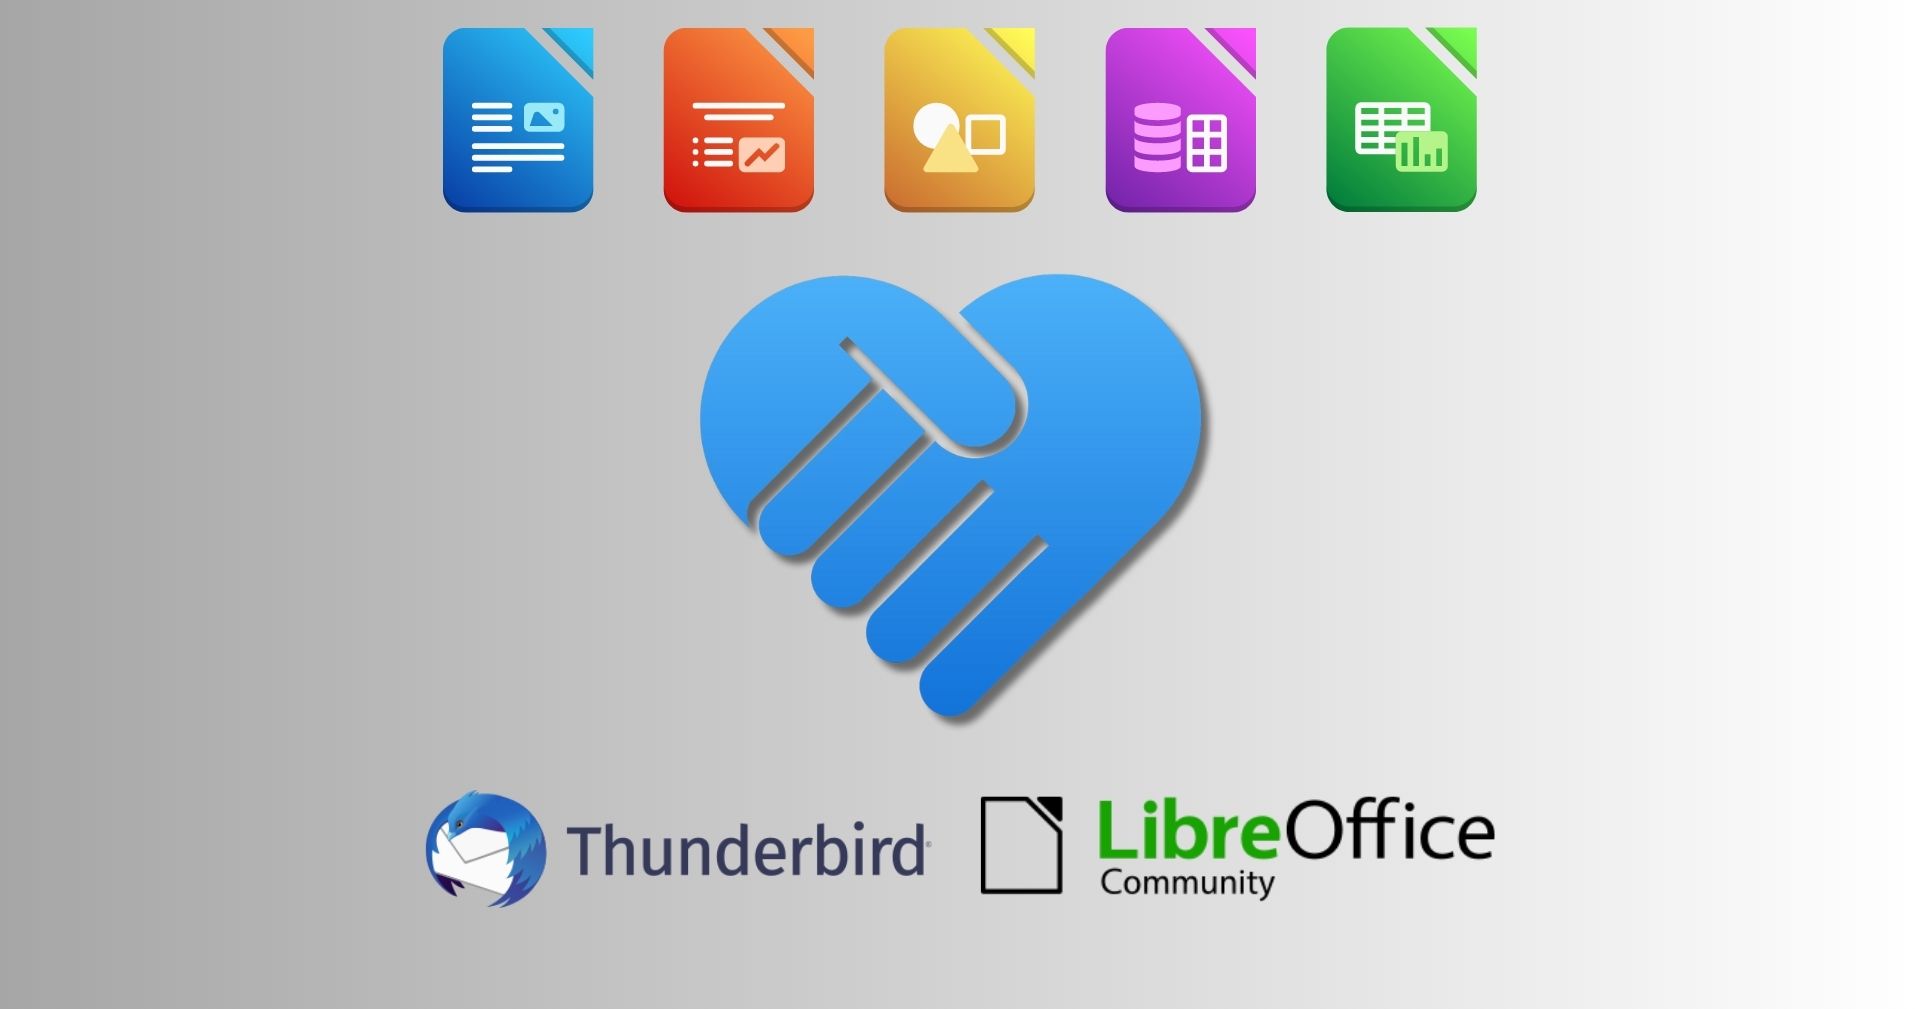 LibreOffice and Thunderbird logos, shaking hands